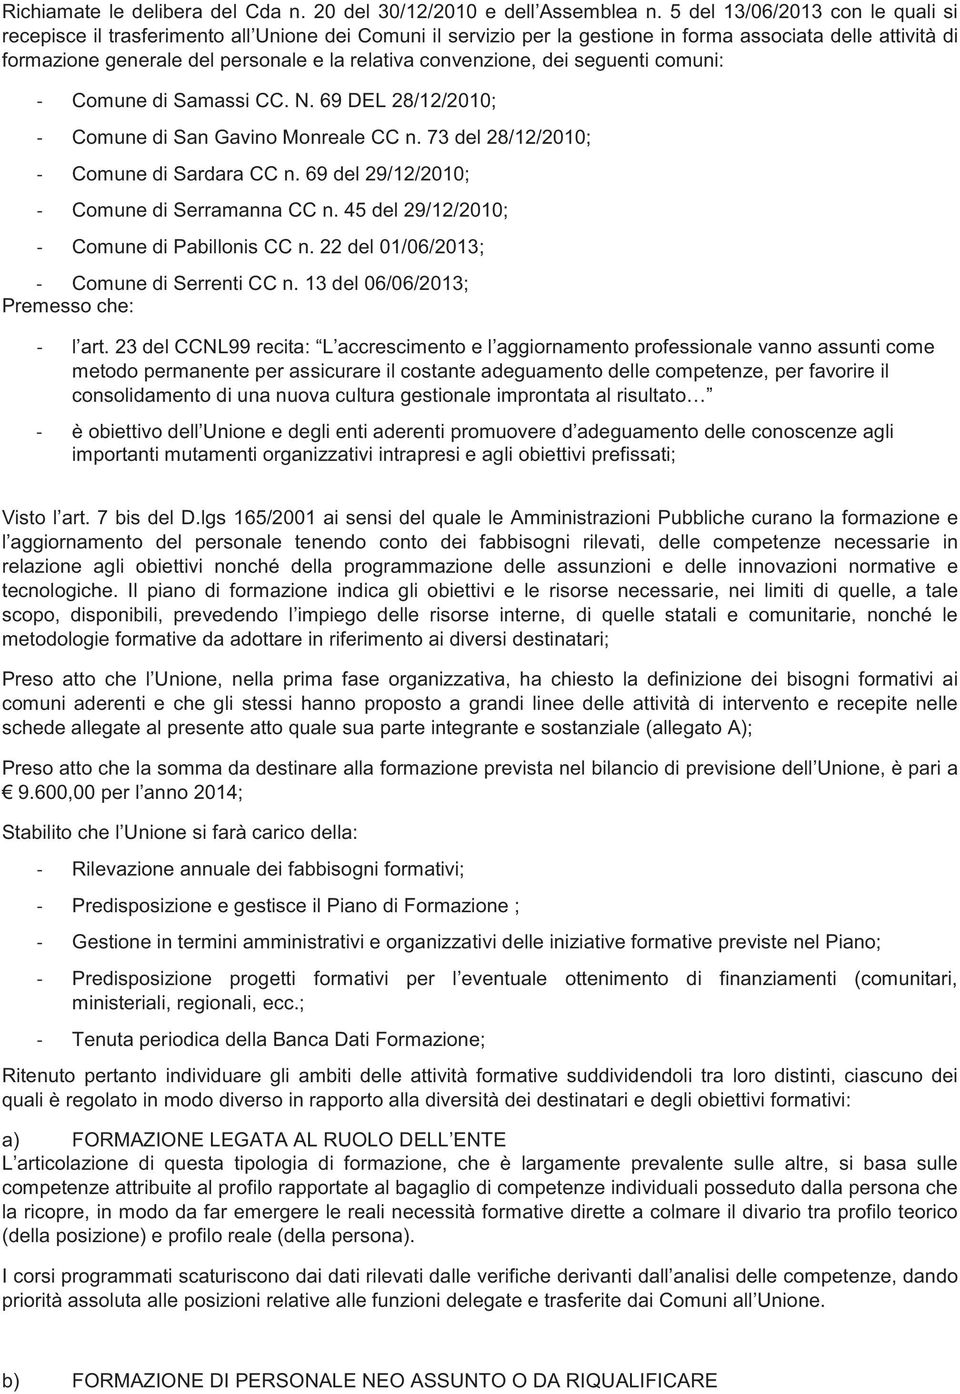 convenzione, dei seguenti comuni: Comune di Samassi CC. N. 69 DEL 28/12/2010; Comune di San Gavino Monreale CC n. 73 del 28/12/2010; Comune di Sardara CC n.